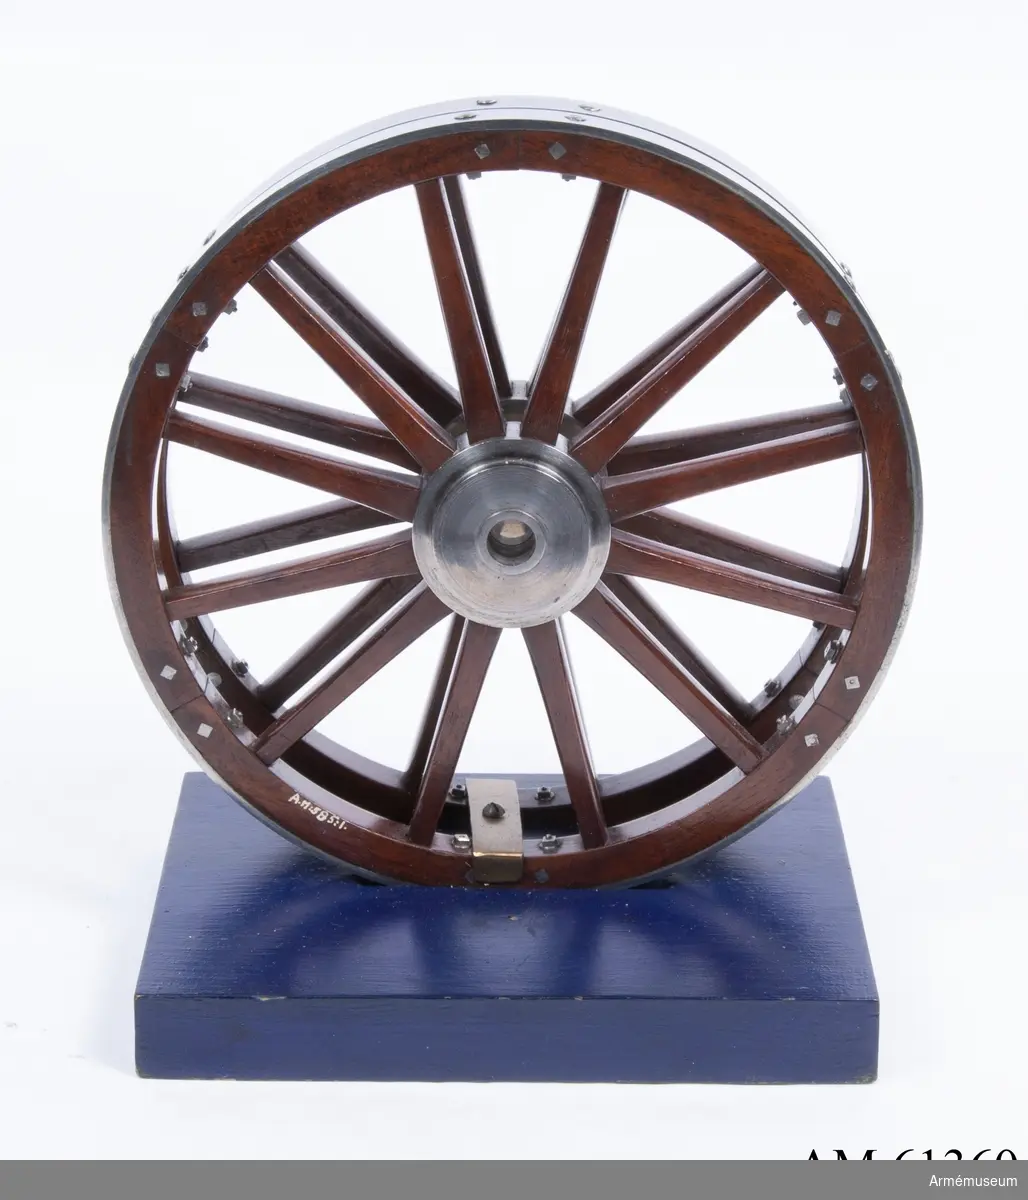 Grupp F I.
Skala 1/8.
Till modell av 23 cm framladdningsbombkanon m/1840. Kapten F A Spaks katalog 1888. Dylika hjul användes även till lavettage m/1846 för 23 cm slätborrade framladdningsbombkanoner.